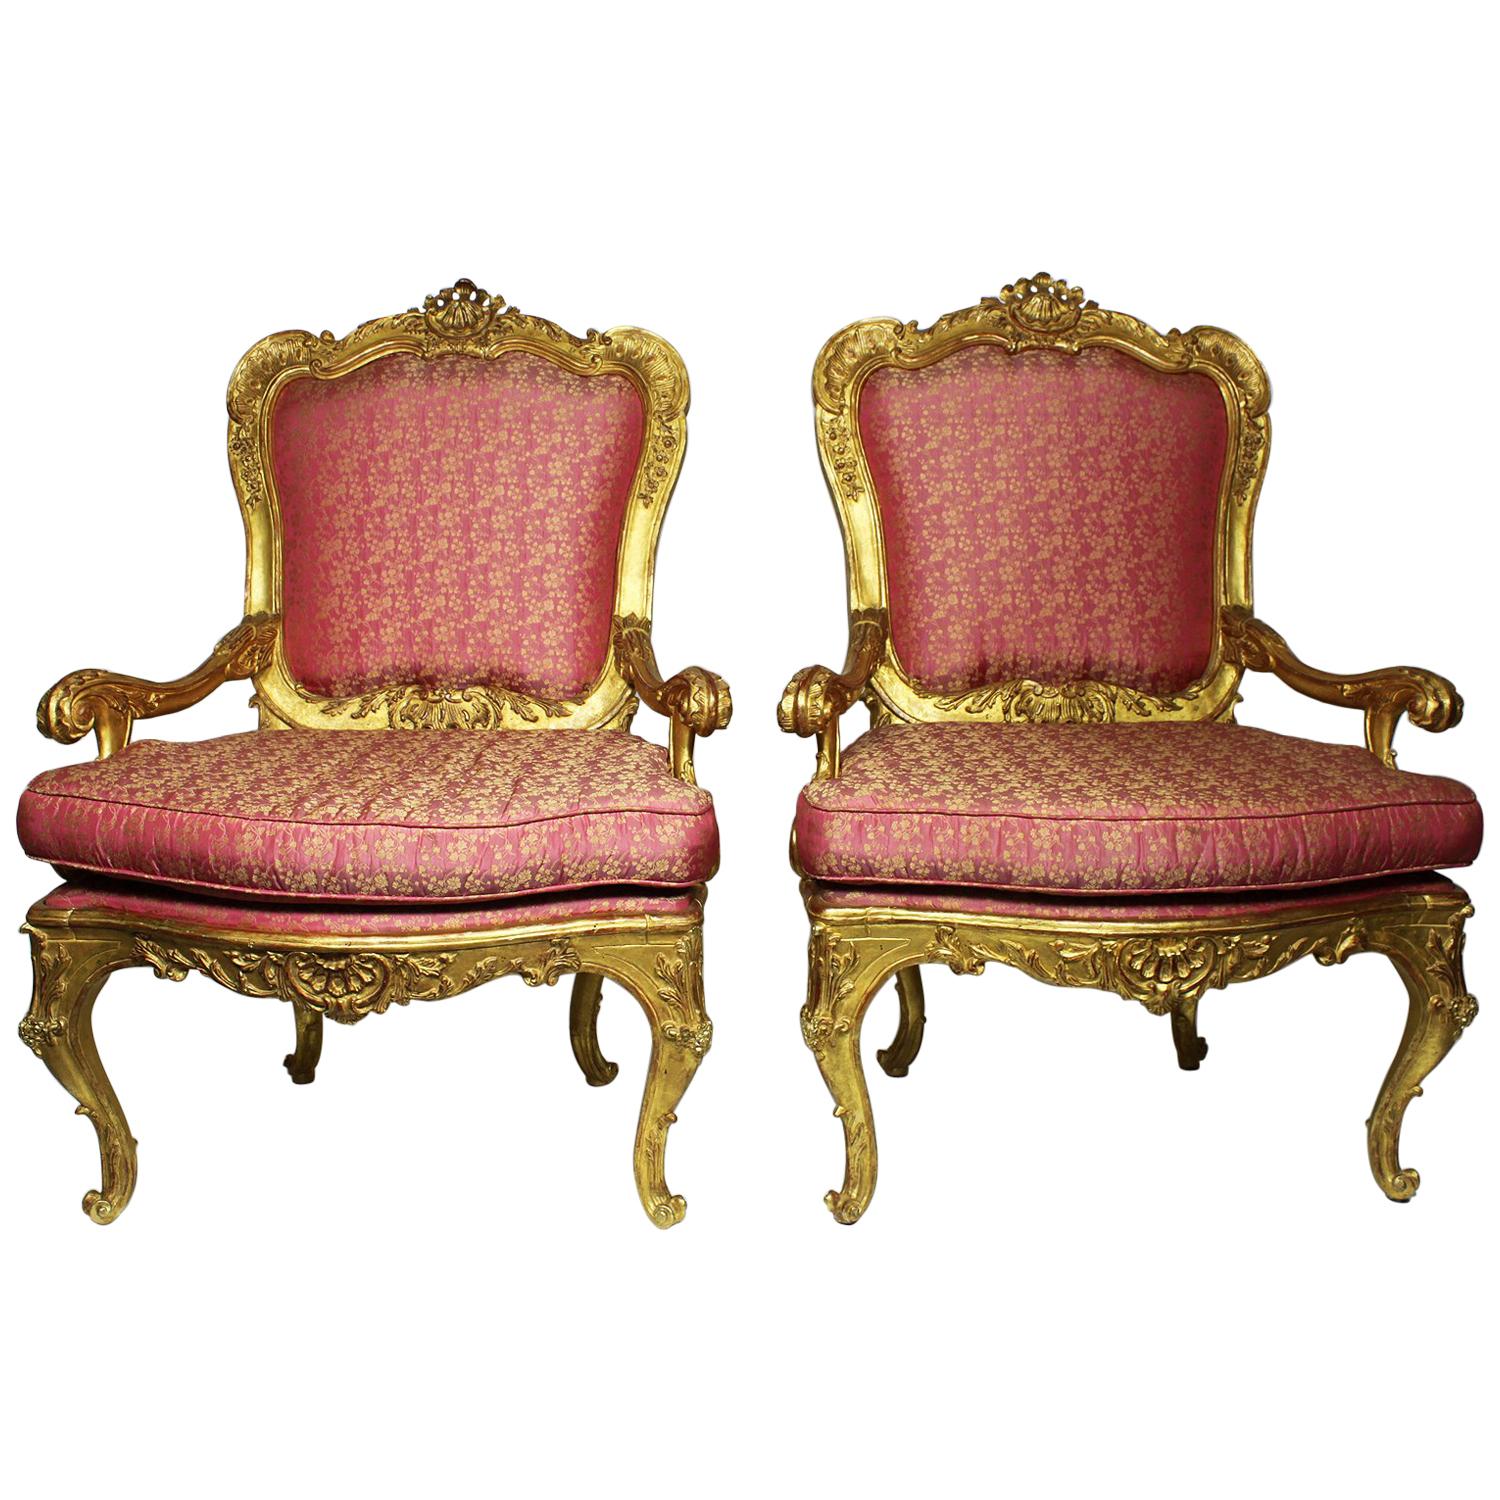 Paire de fauteuils trônes en bois doré sculpté de style néo-rococo vénitien italien